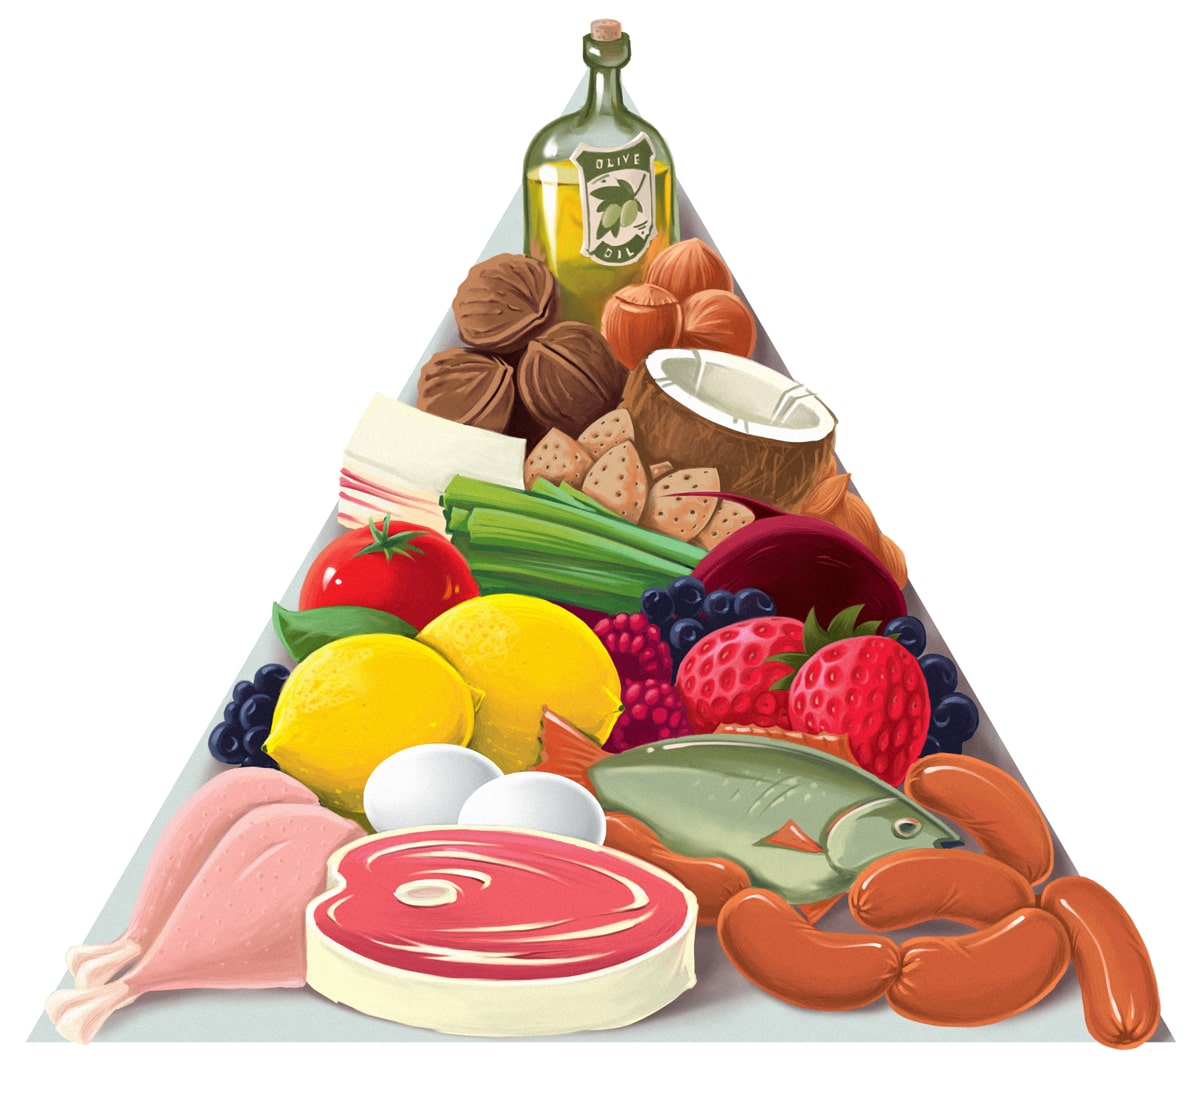 FoodPyramid